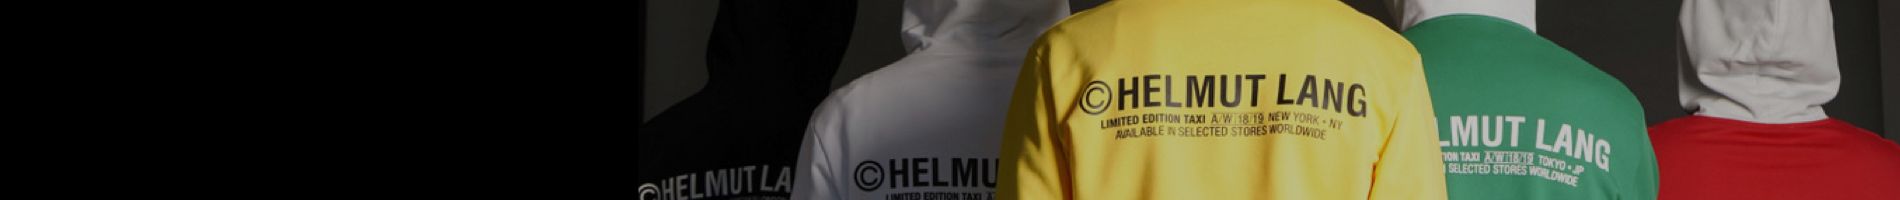 Helmut Lang Men's Leather Jackets Banner